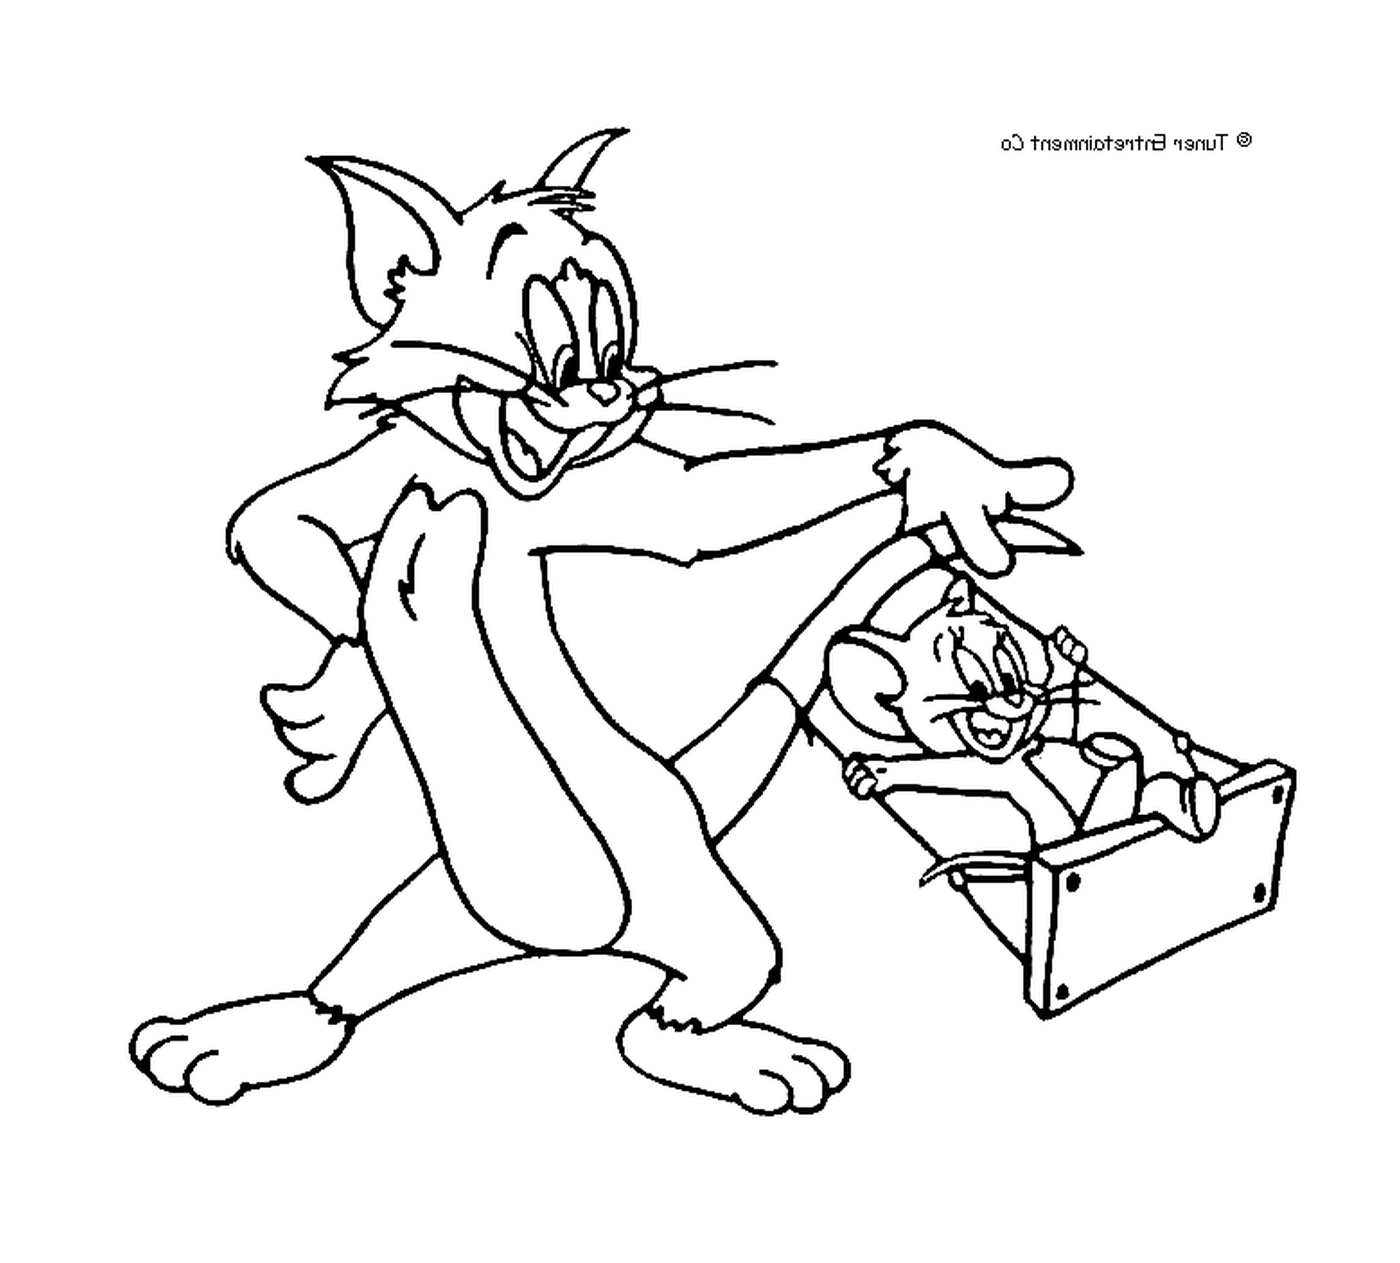   Jerry balance Tom sur une balançoire 